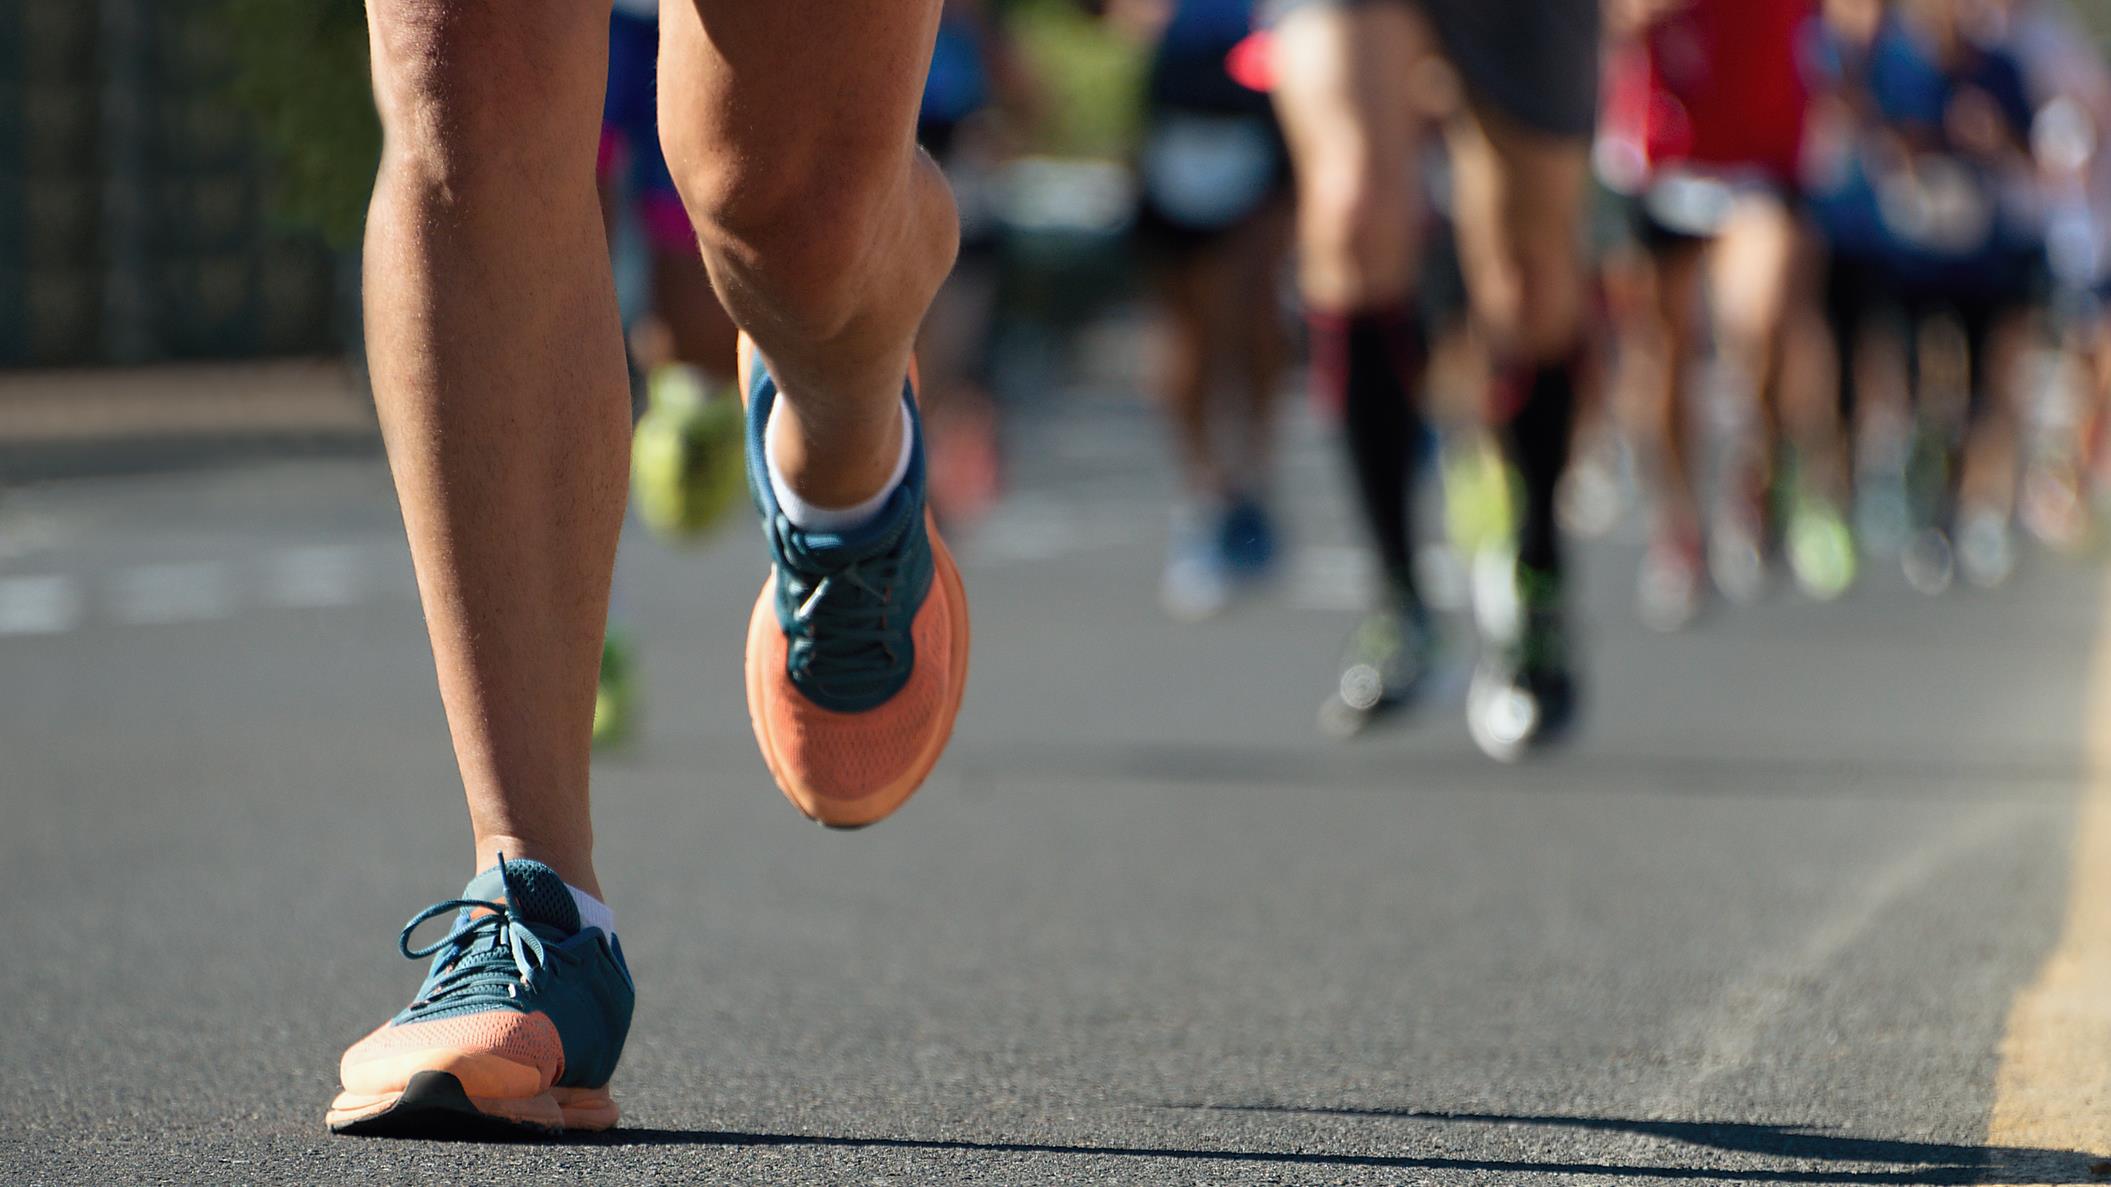 Garder la motivation et éviter les blessures en pratiquant la course à pied
Garder la motivation et éviter les blessures en pratiquant la course à pied